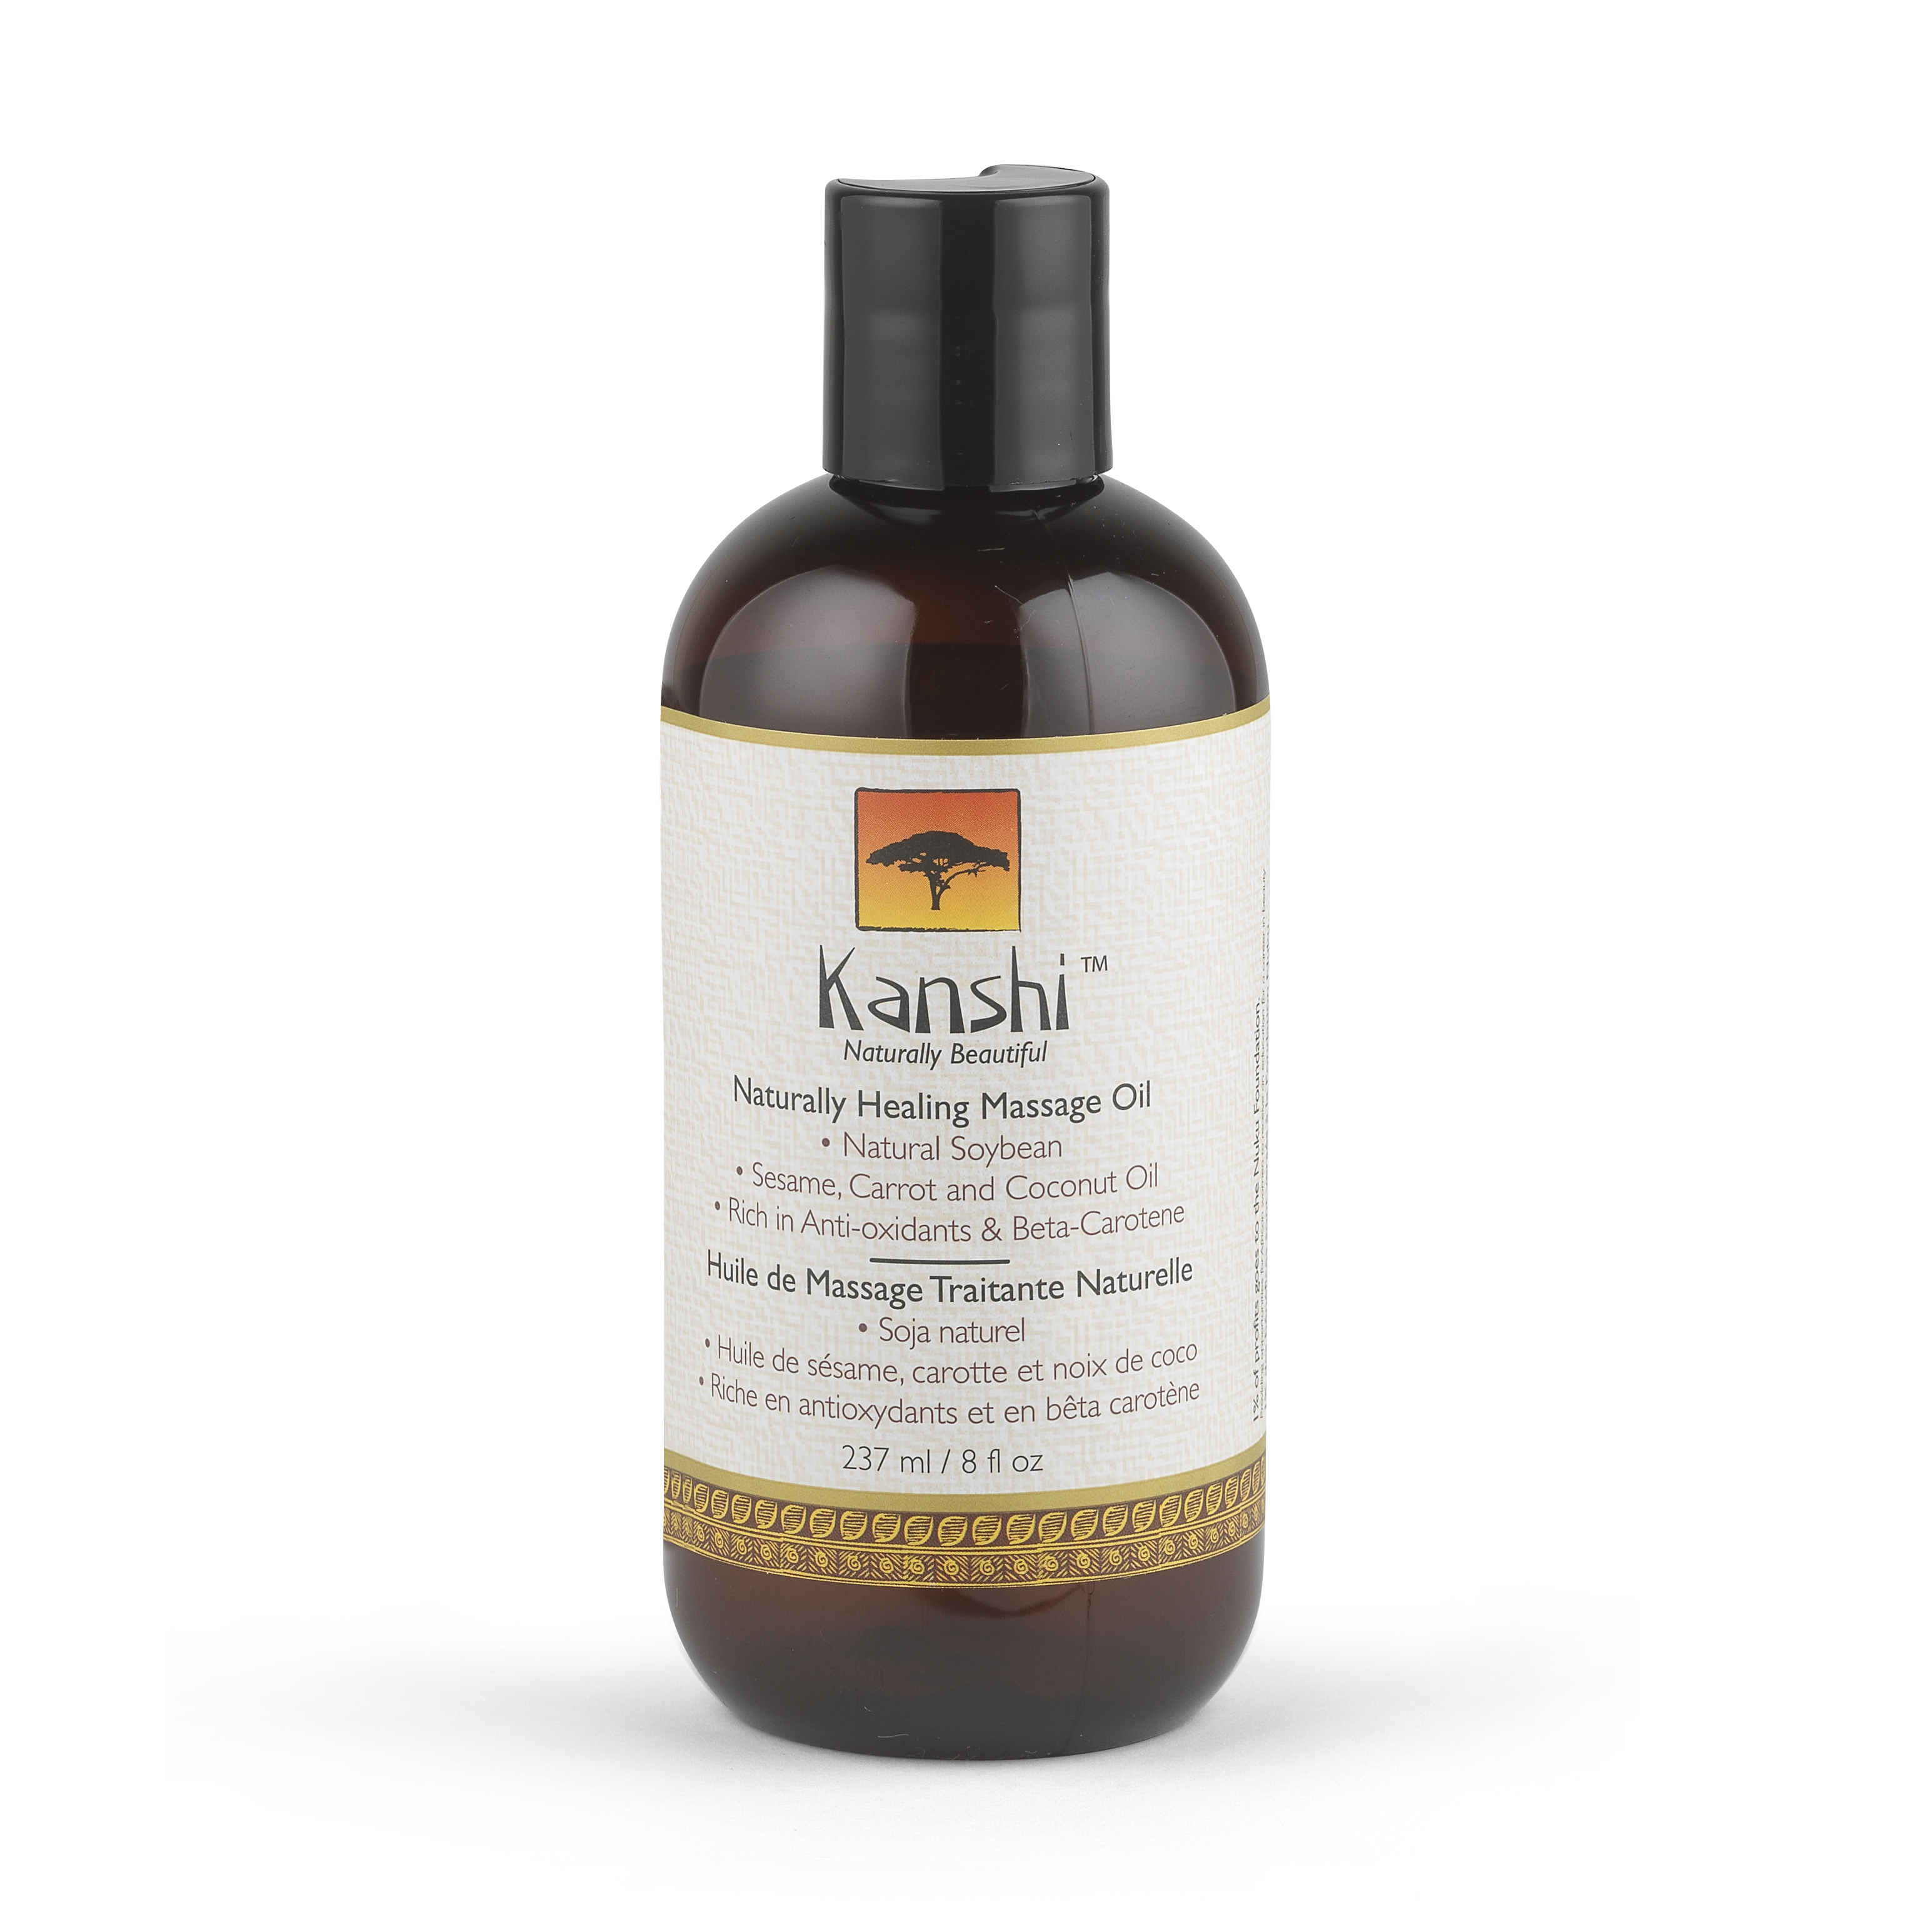 Kanshi Naturally Healing Massage Oil Products Directory Massage Magazine